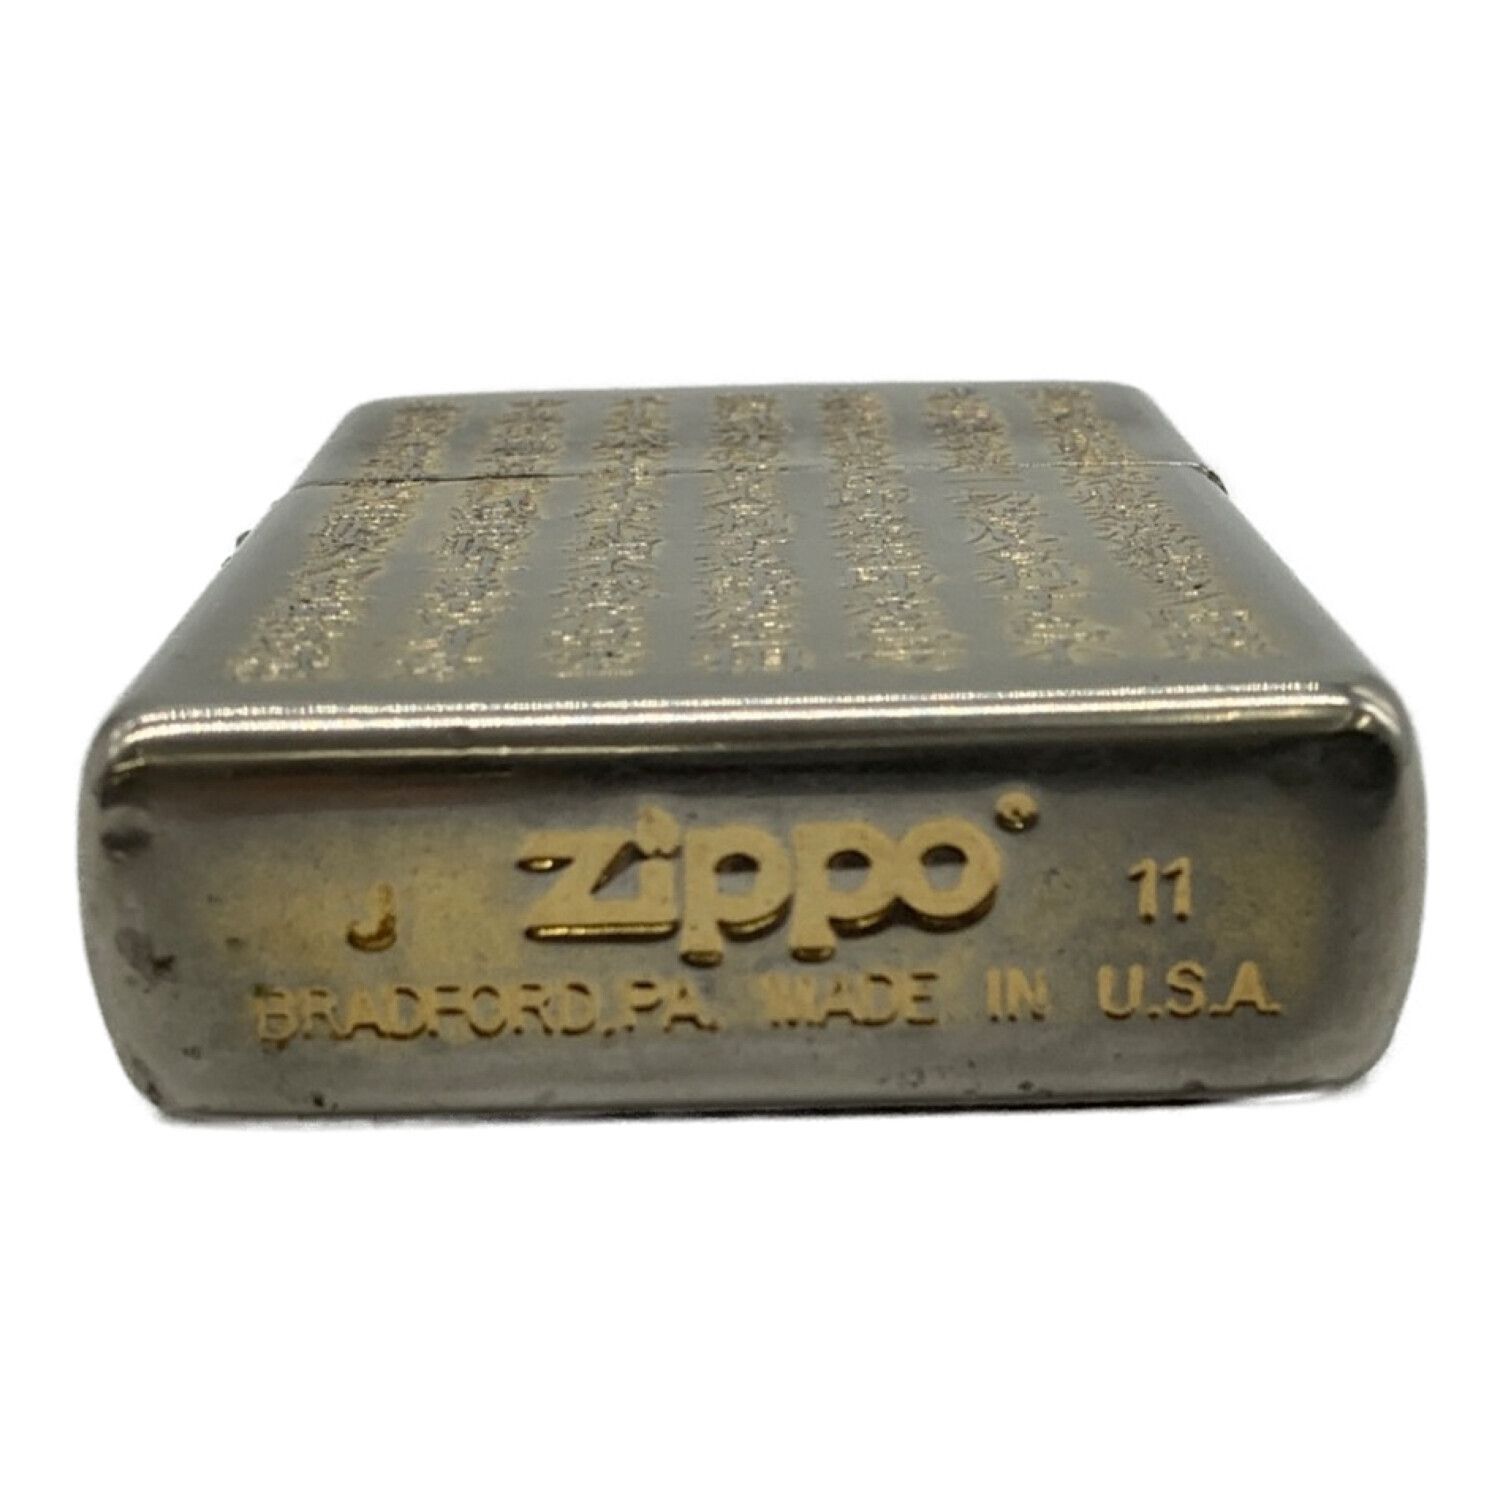 ZIPPO 般若心経 真鍮古美 5面逆エッチング加工 ゴールド ジッポ ライター